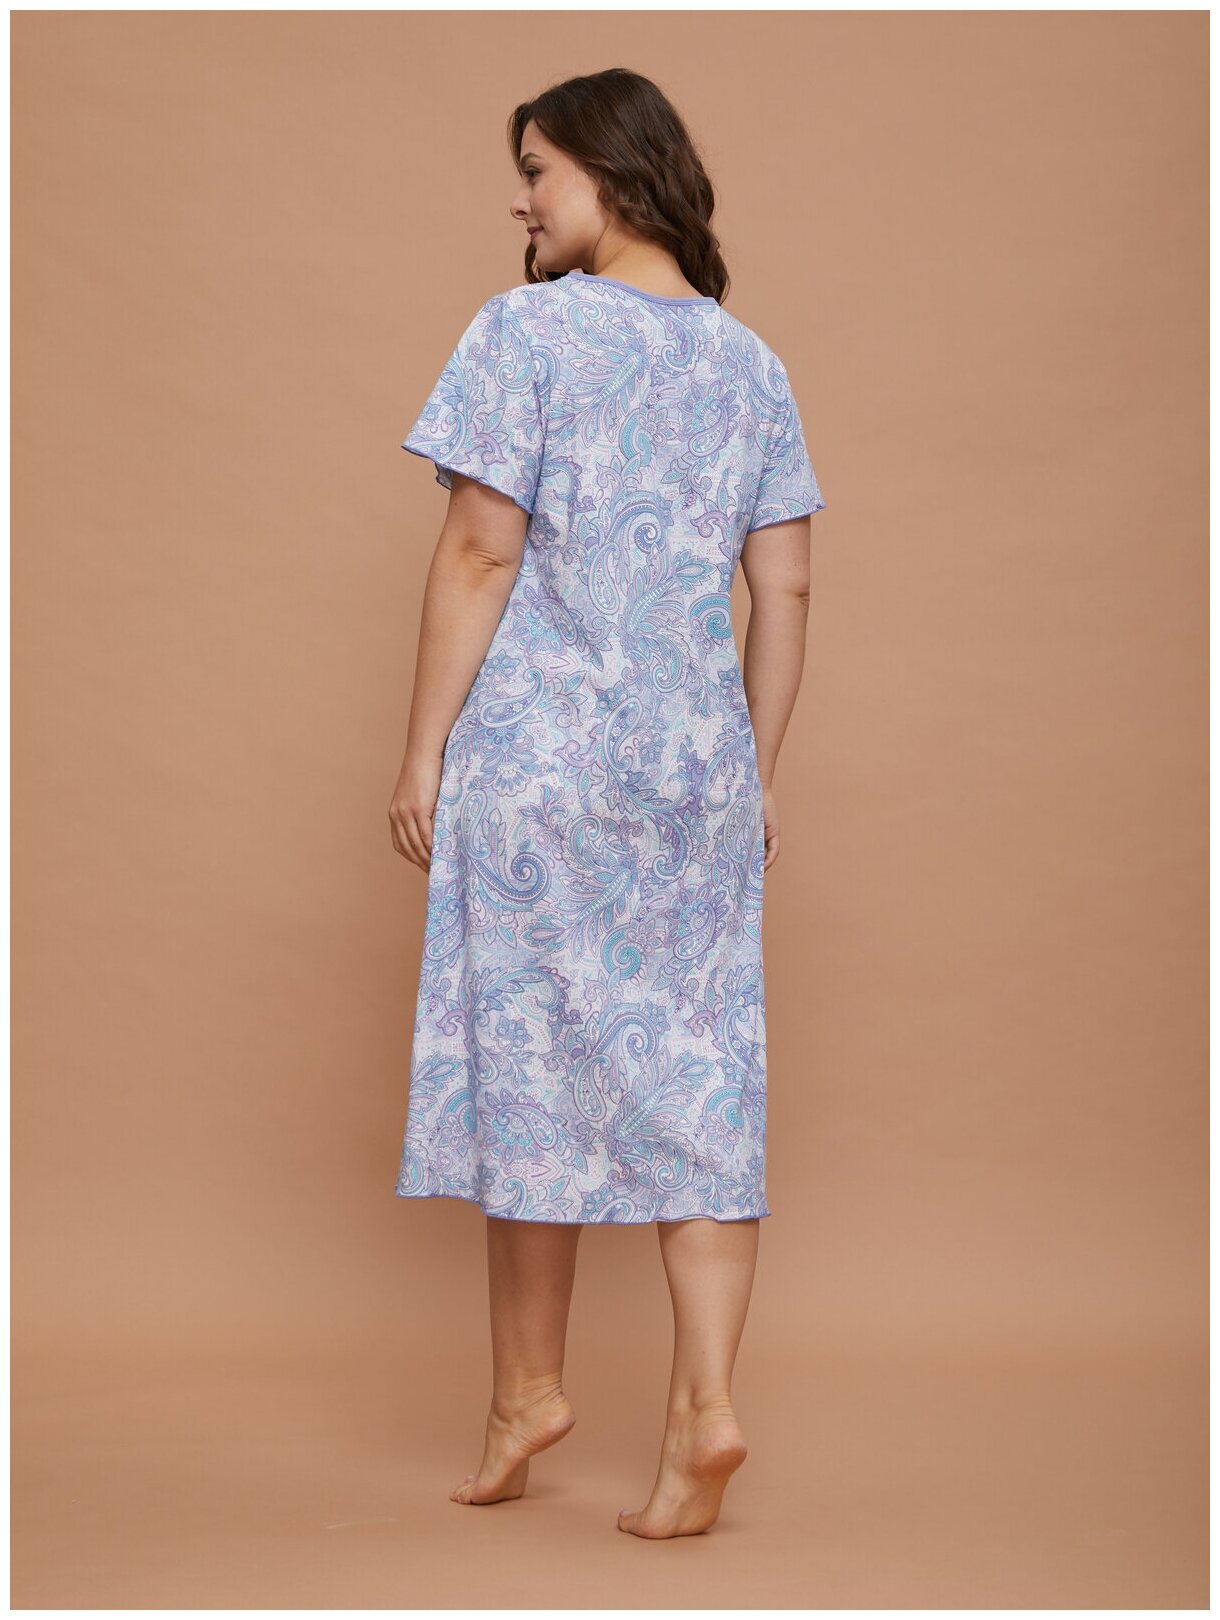 Сорочка ночная женская Алтекс сиреневая, размер 56 - фотография № 4